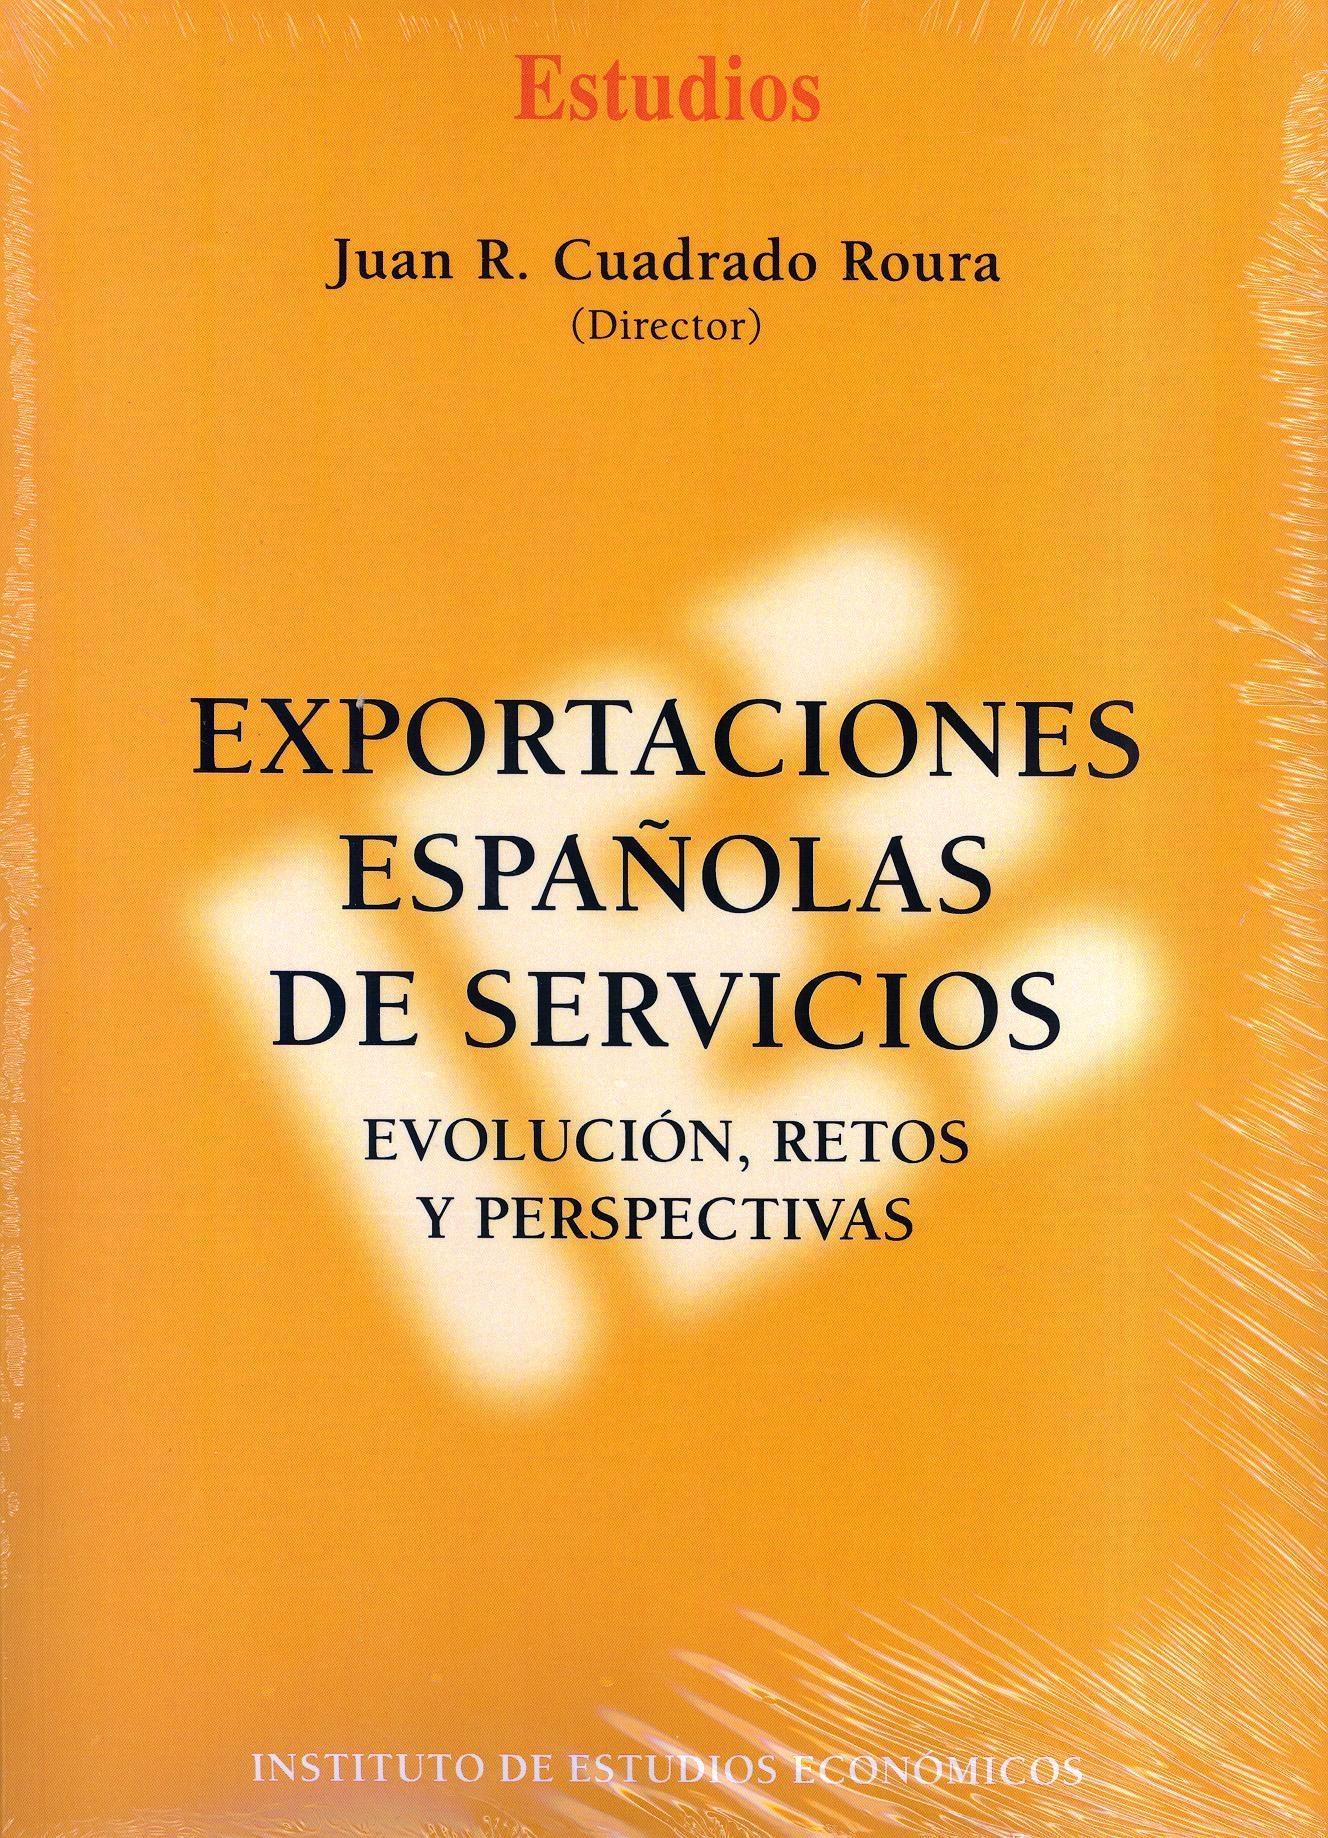 Exportaciones Españolas de Servicios Evolución, Retos y Perspectivas